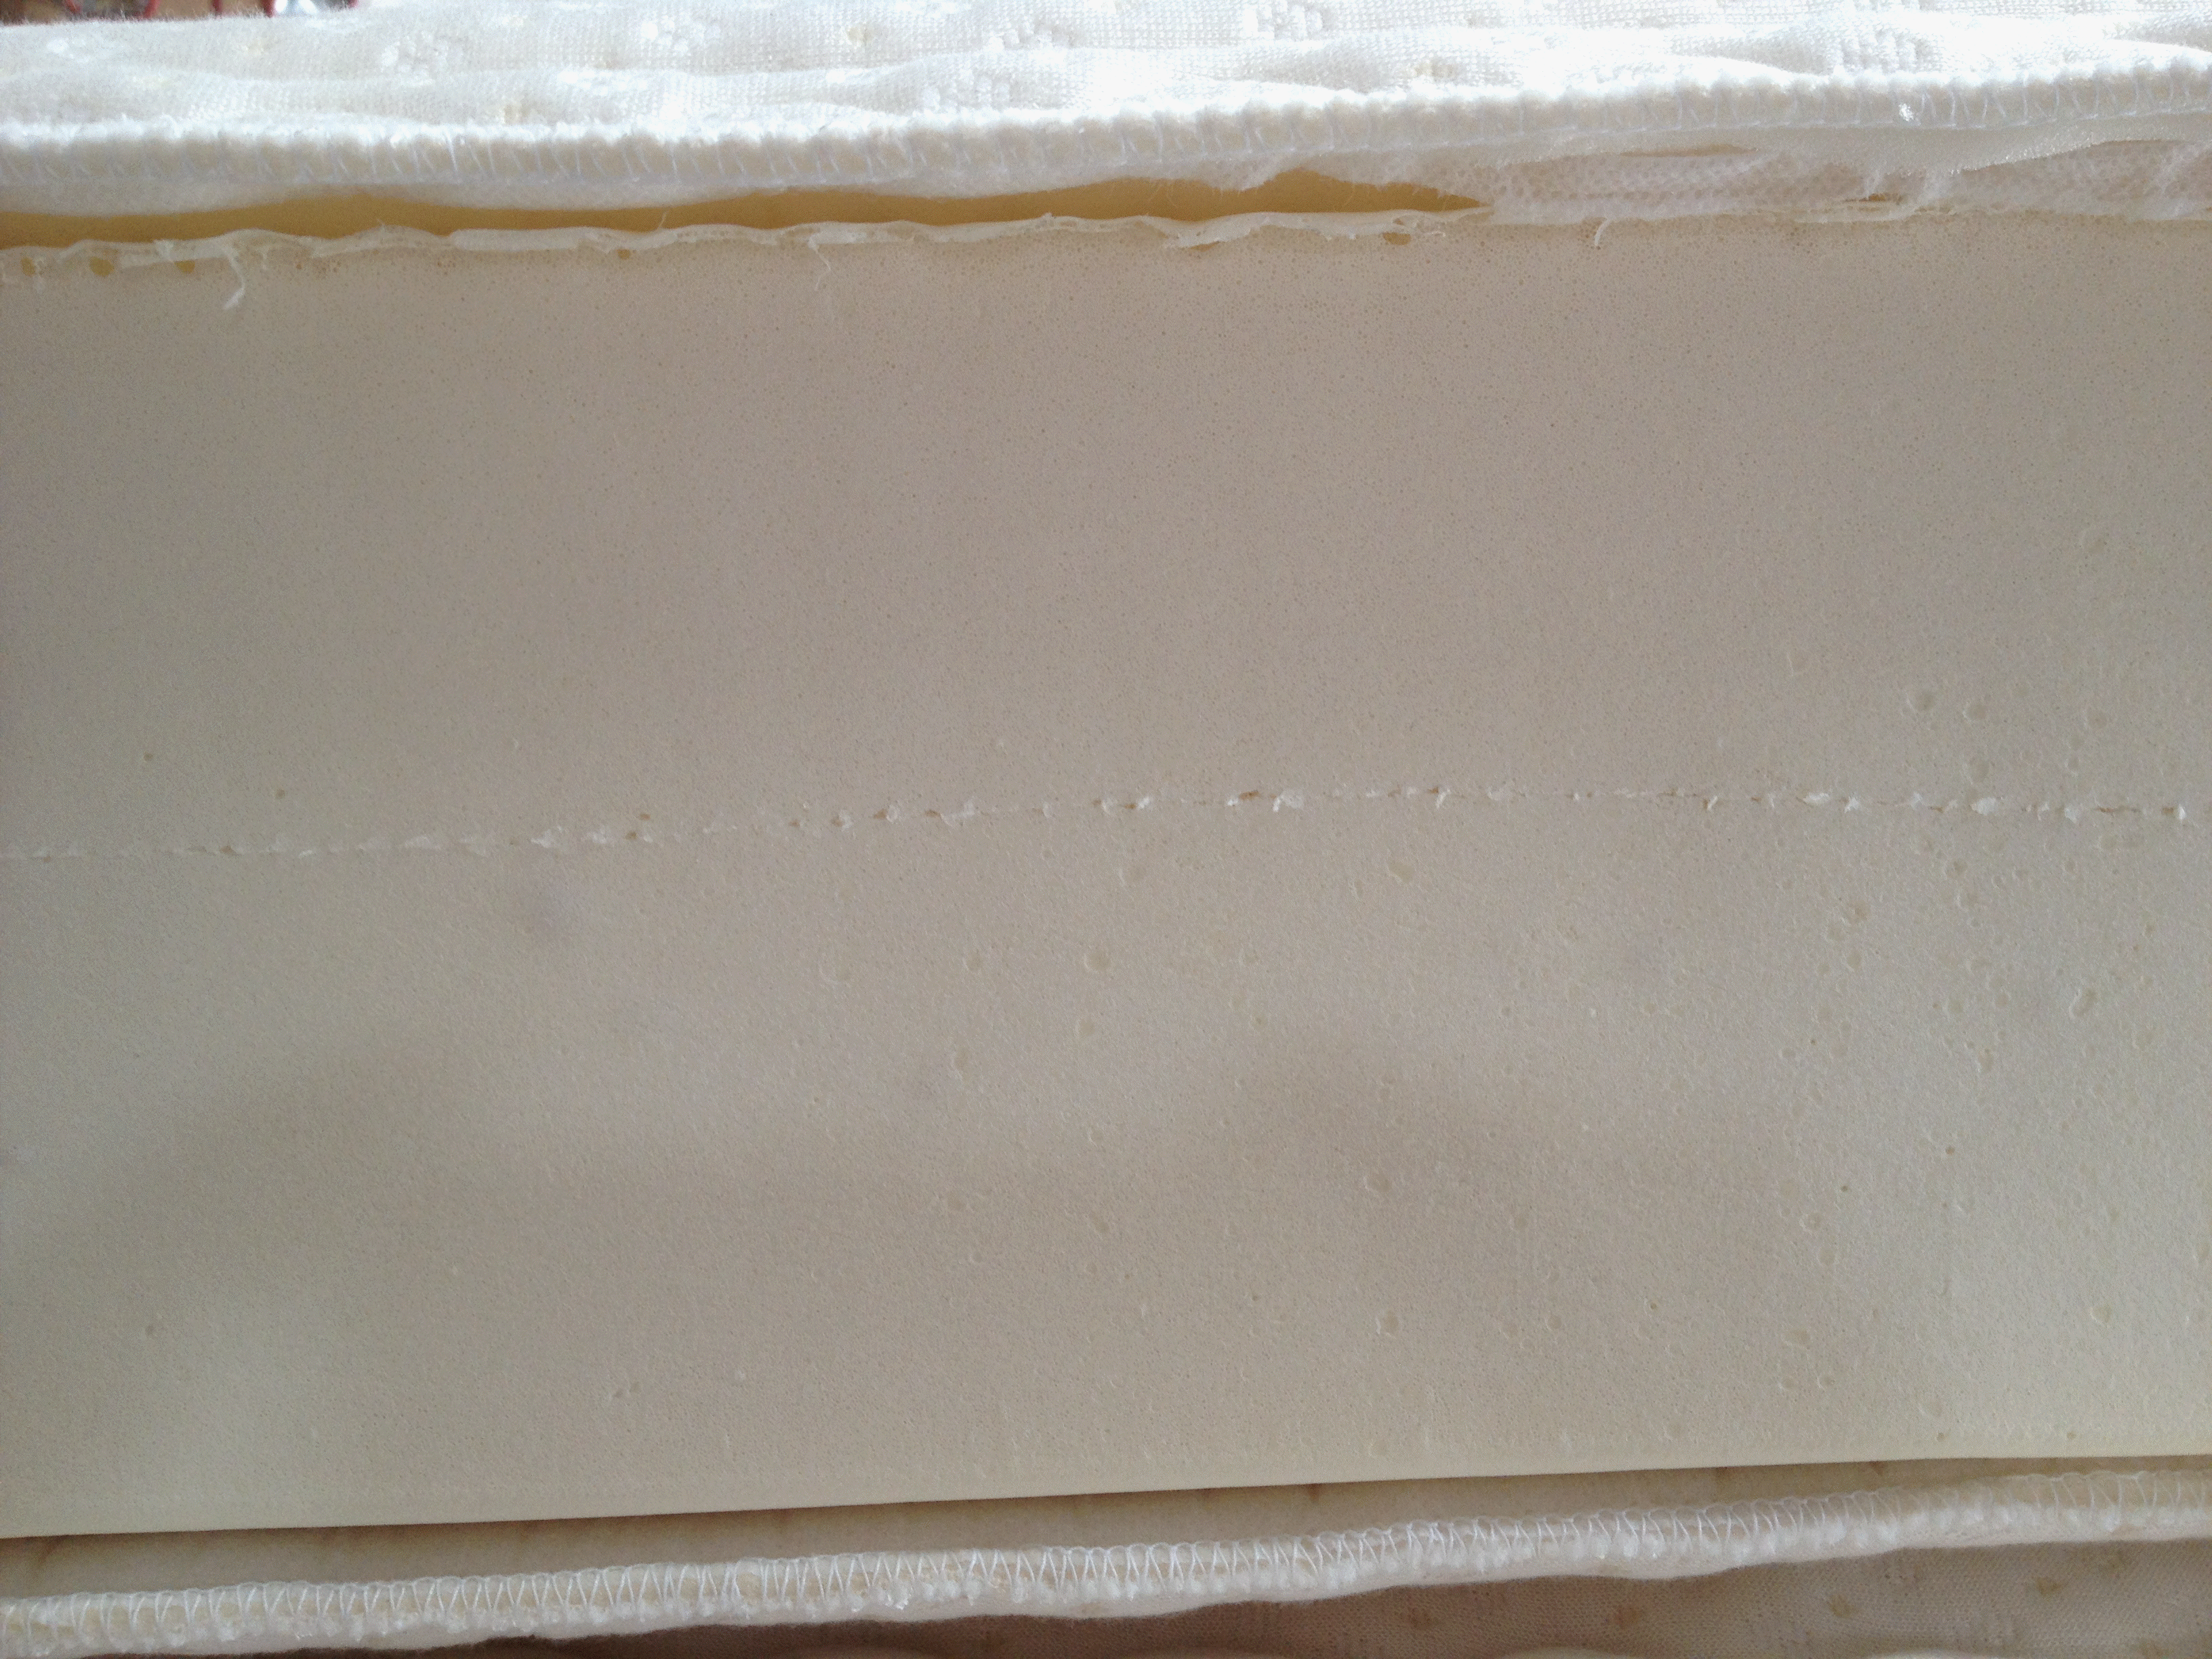 Latex mattress